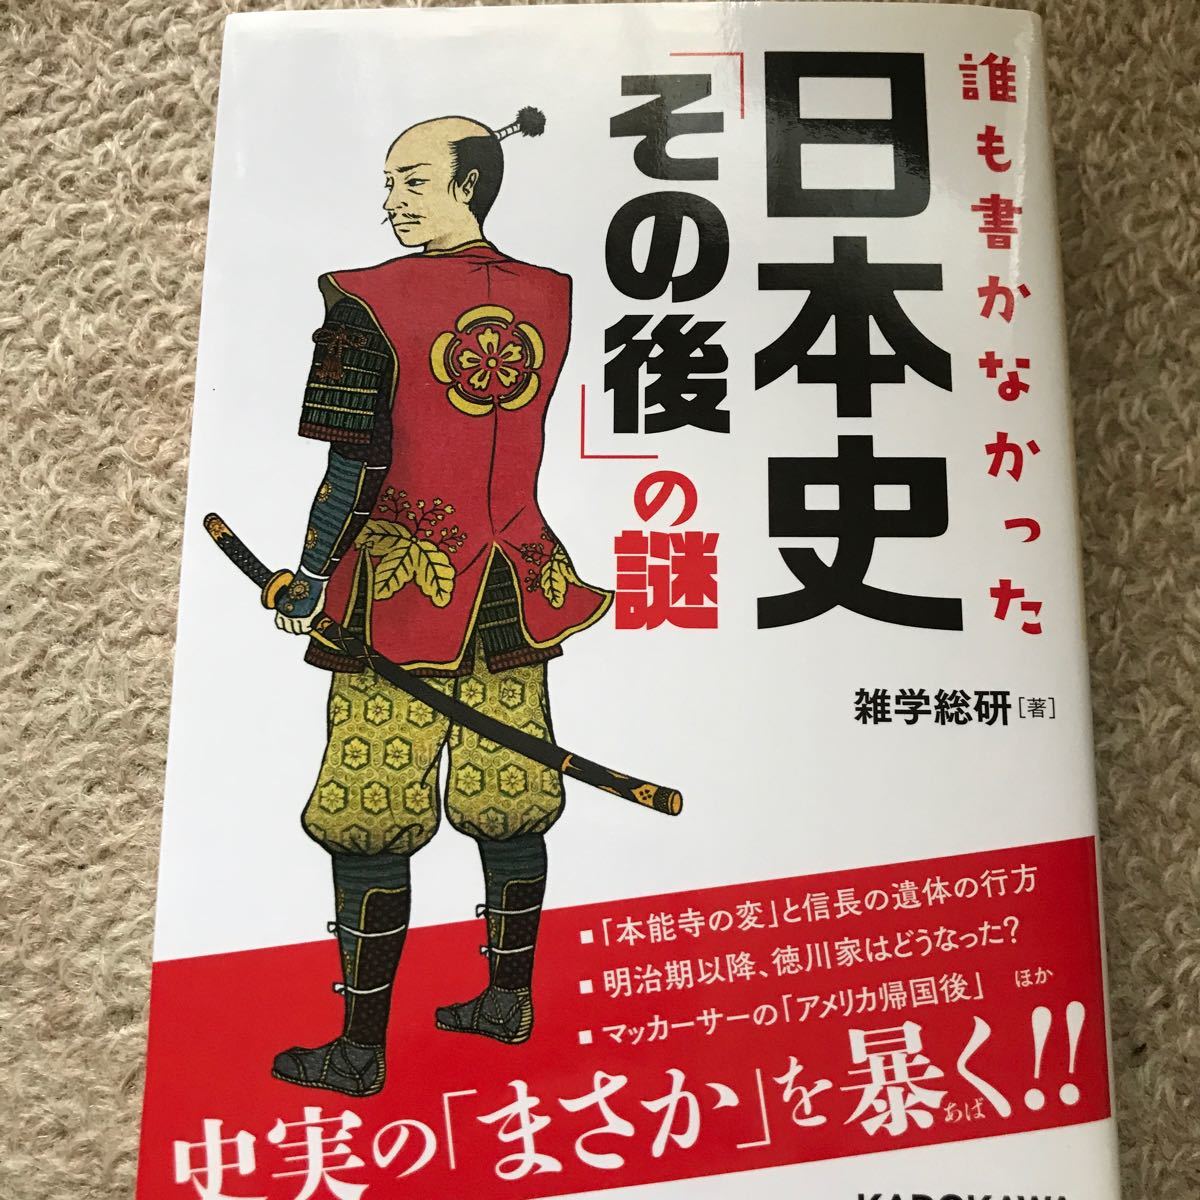 誰も書かなかった日本史 「その後」 の謎/雑学総研